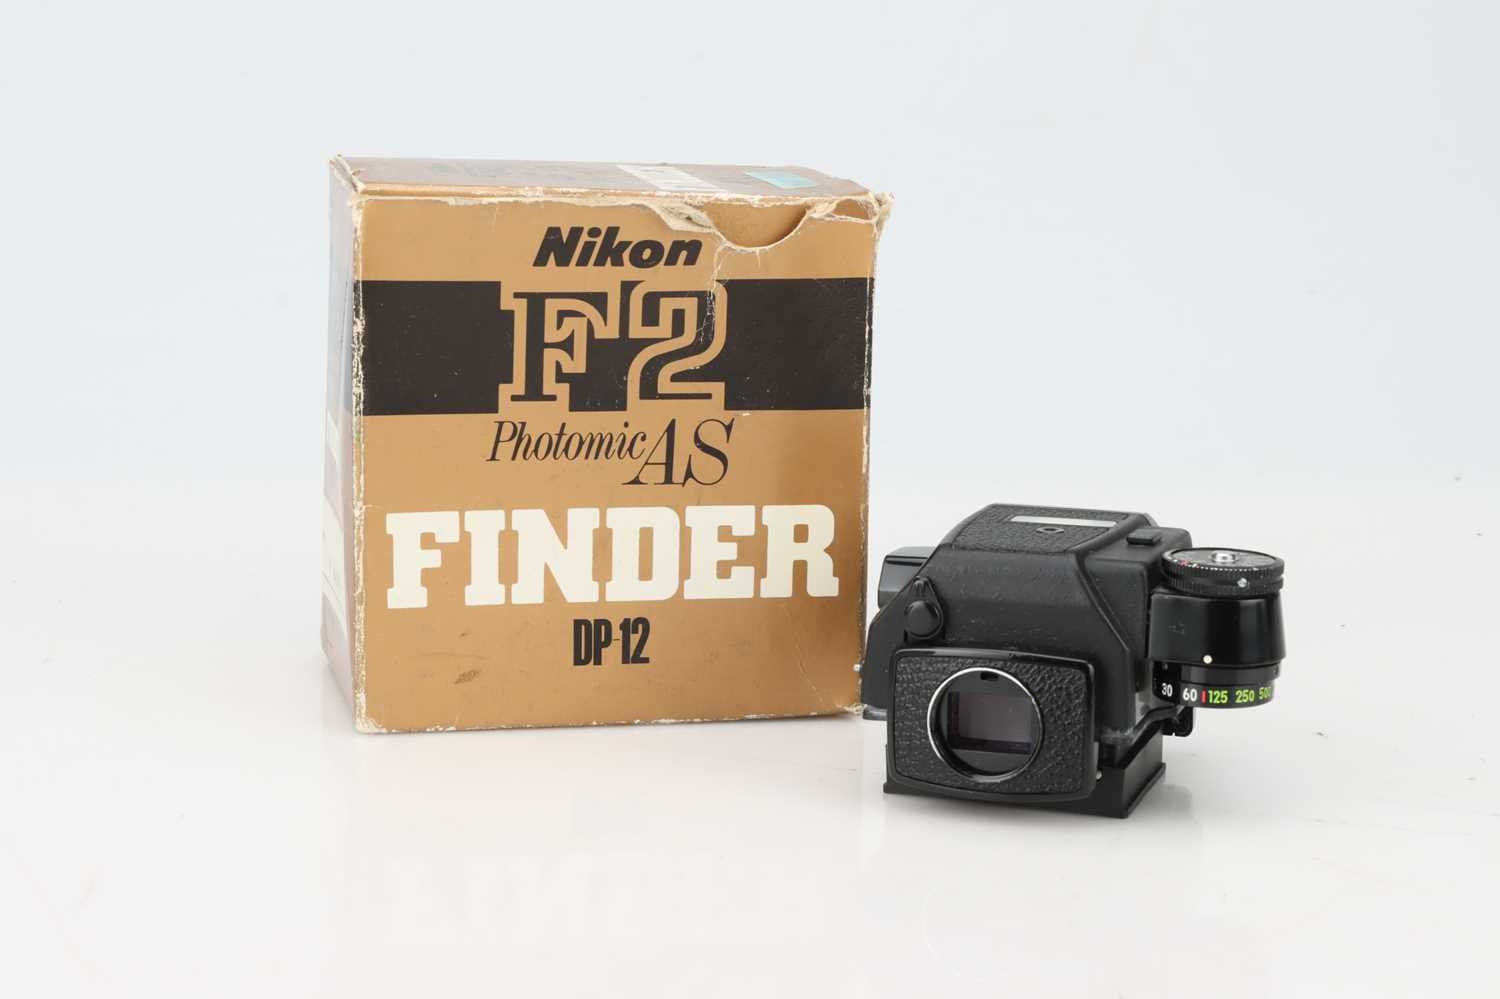 Lot 653 A Nikon F2 Photomic As Finder Dp 12